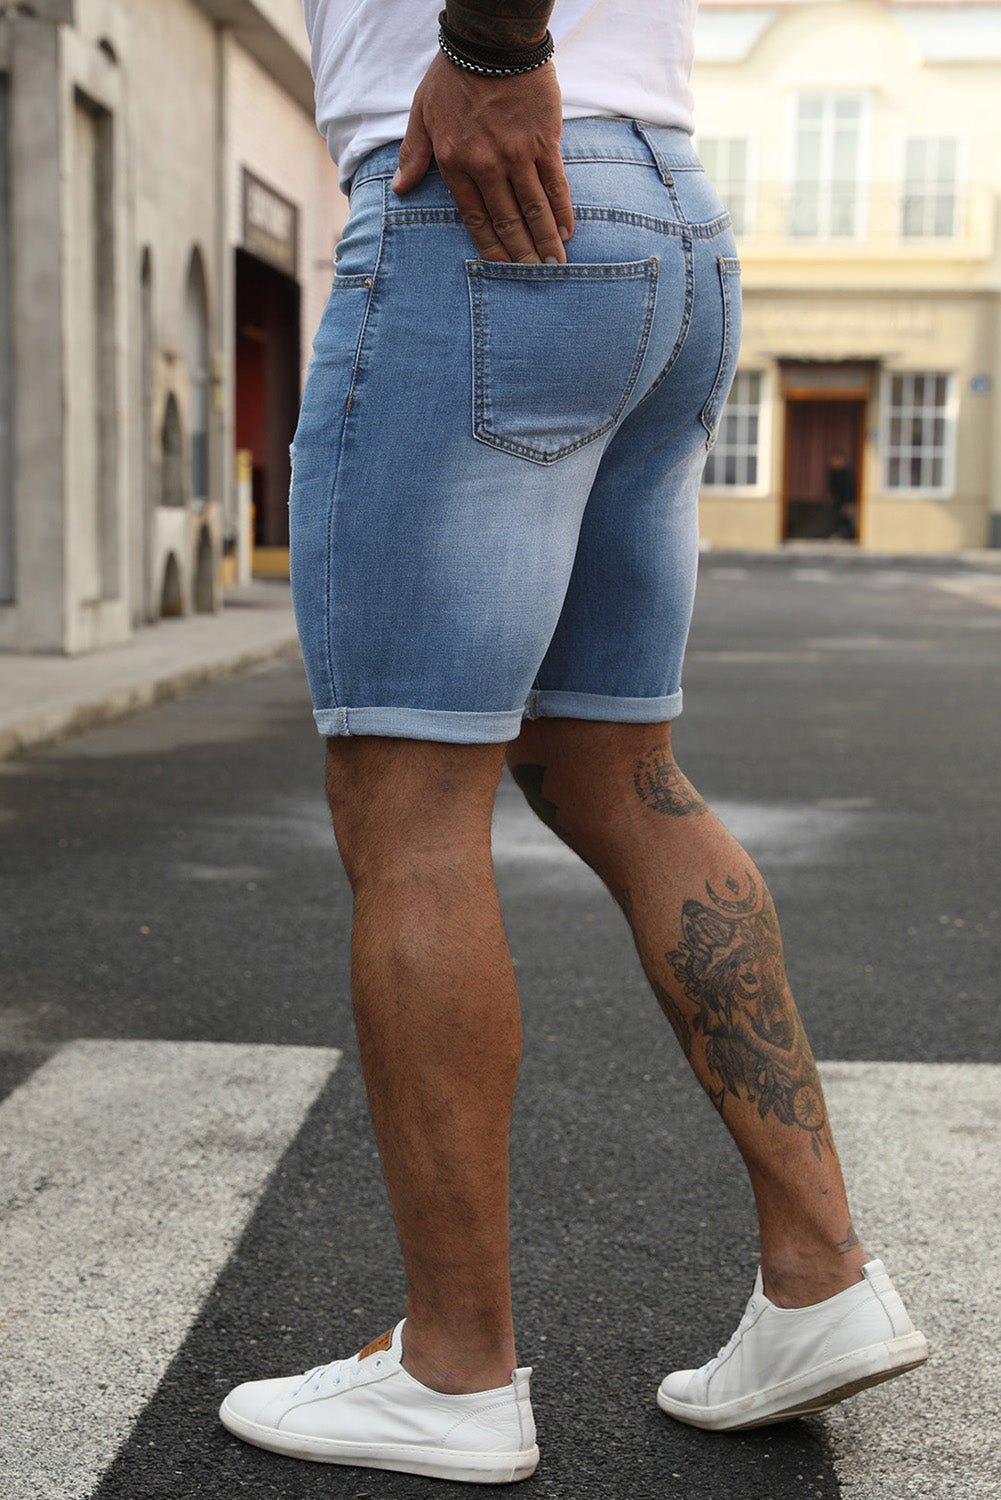 Sky Blue Distressed Low-rise Men's Denim Shorts Men's Pants JT's Designer Fashion